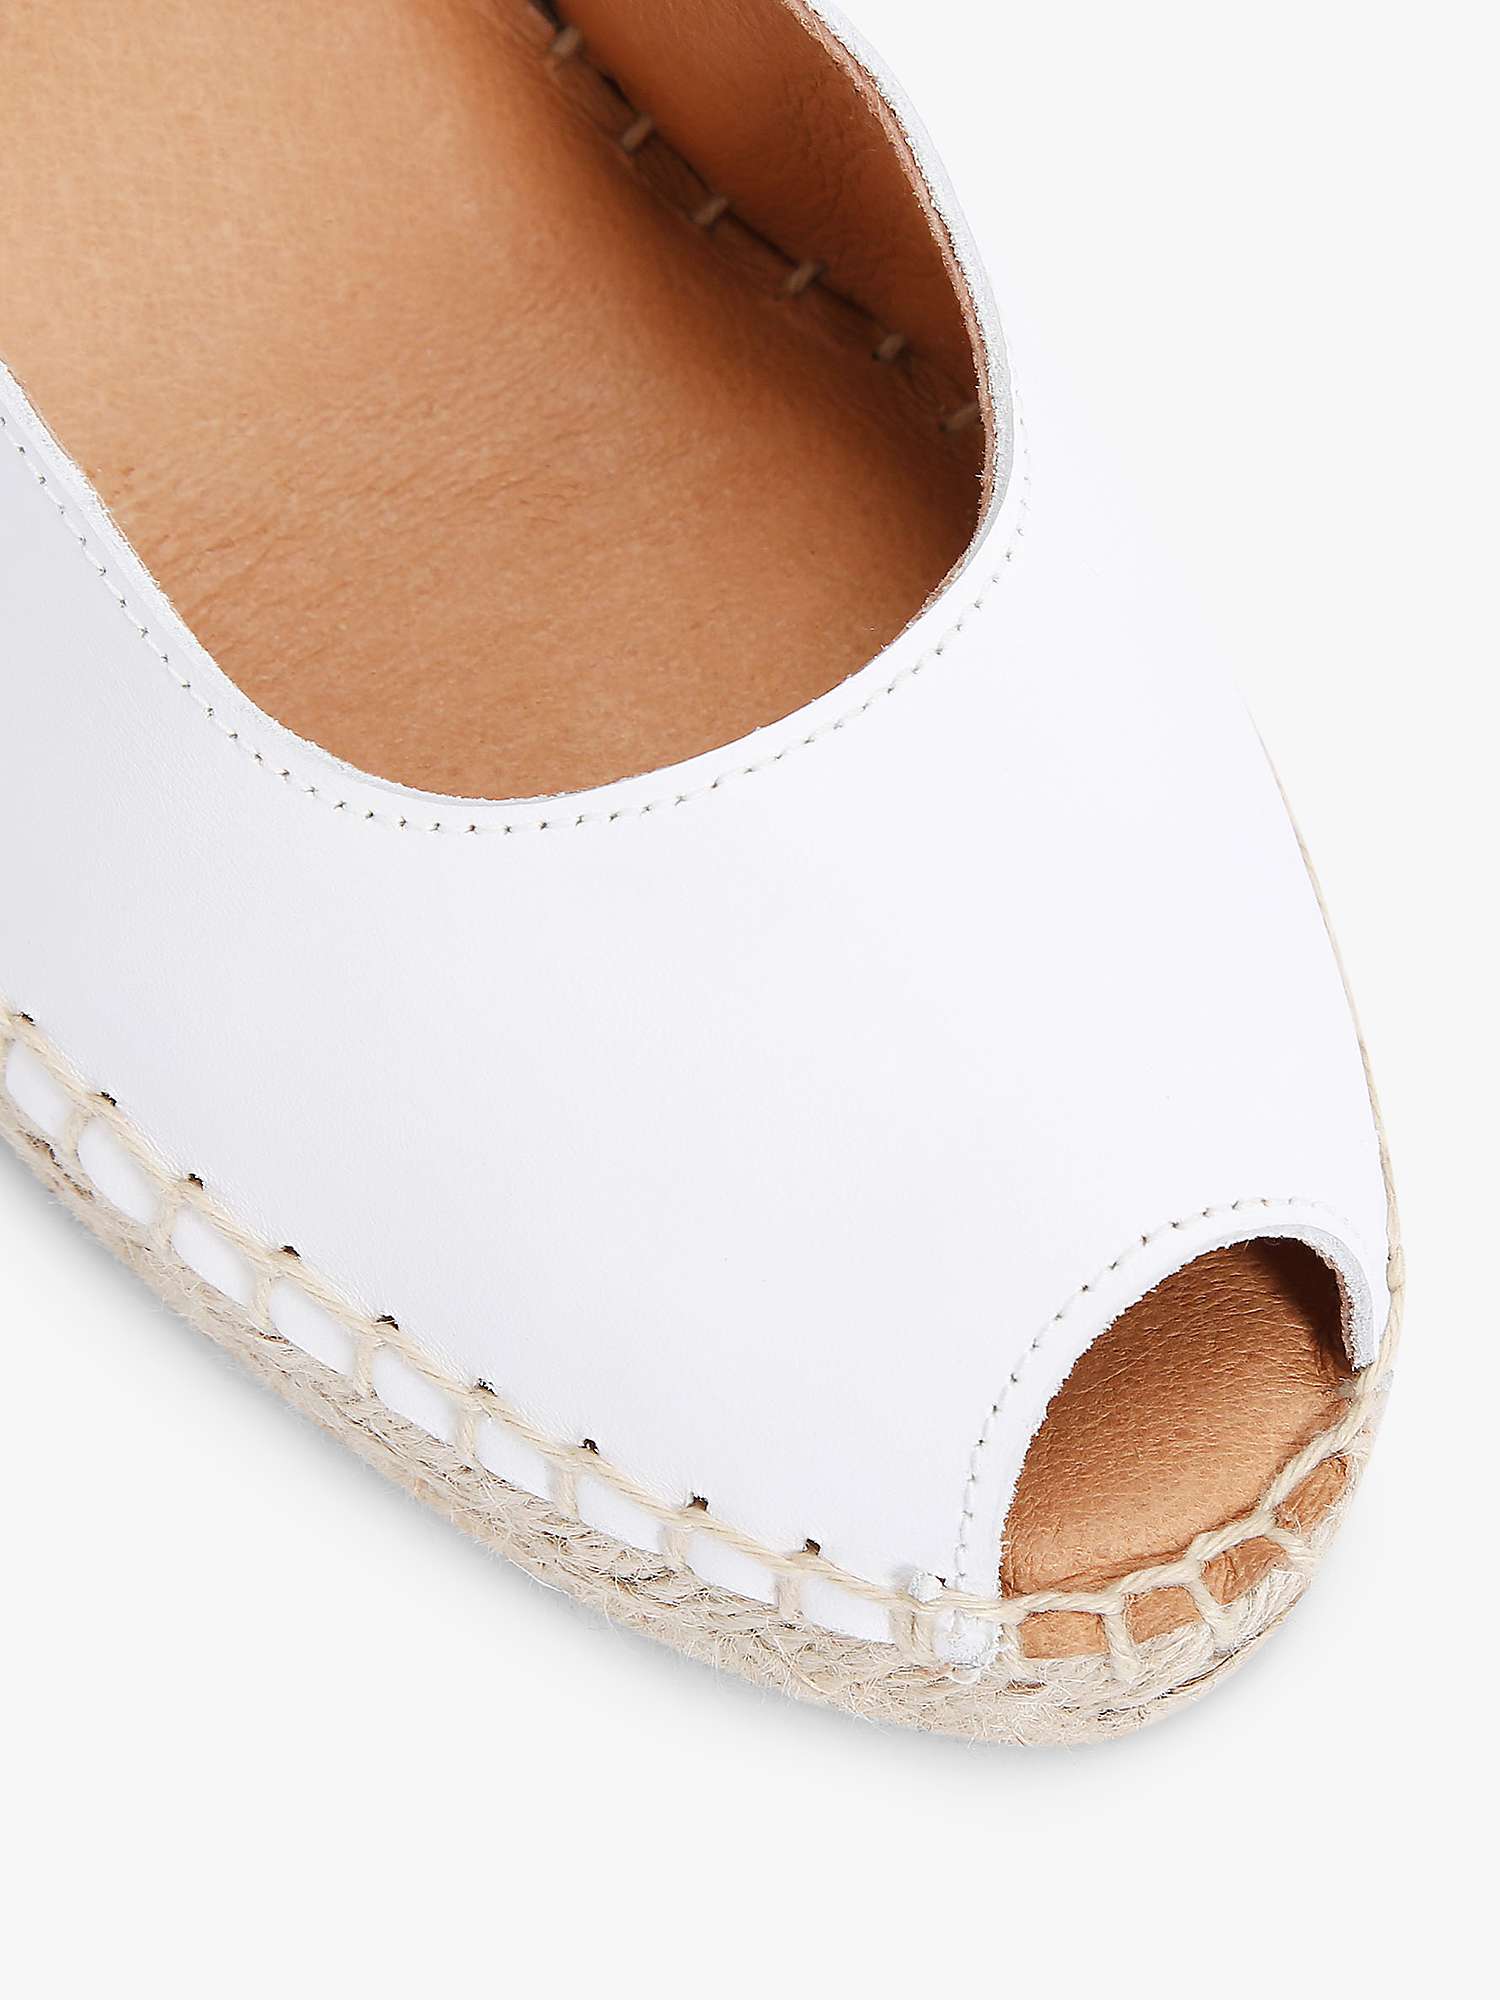 Buy Carvela Sharon Espadrille Wedge Sandals Online at johnlewis.com